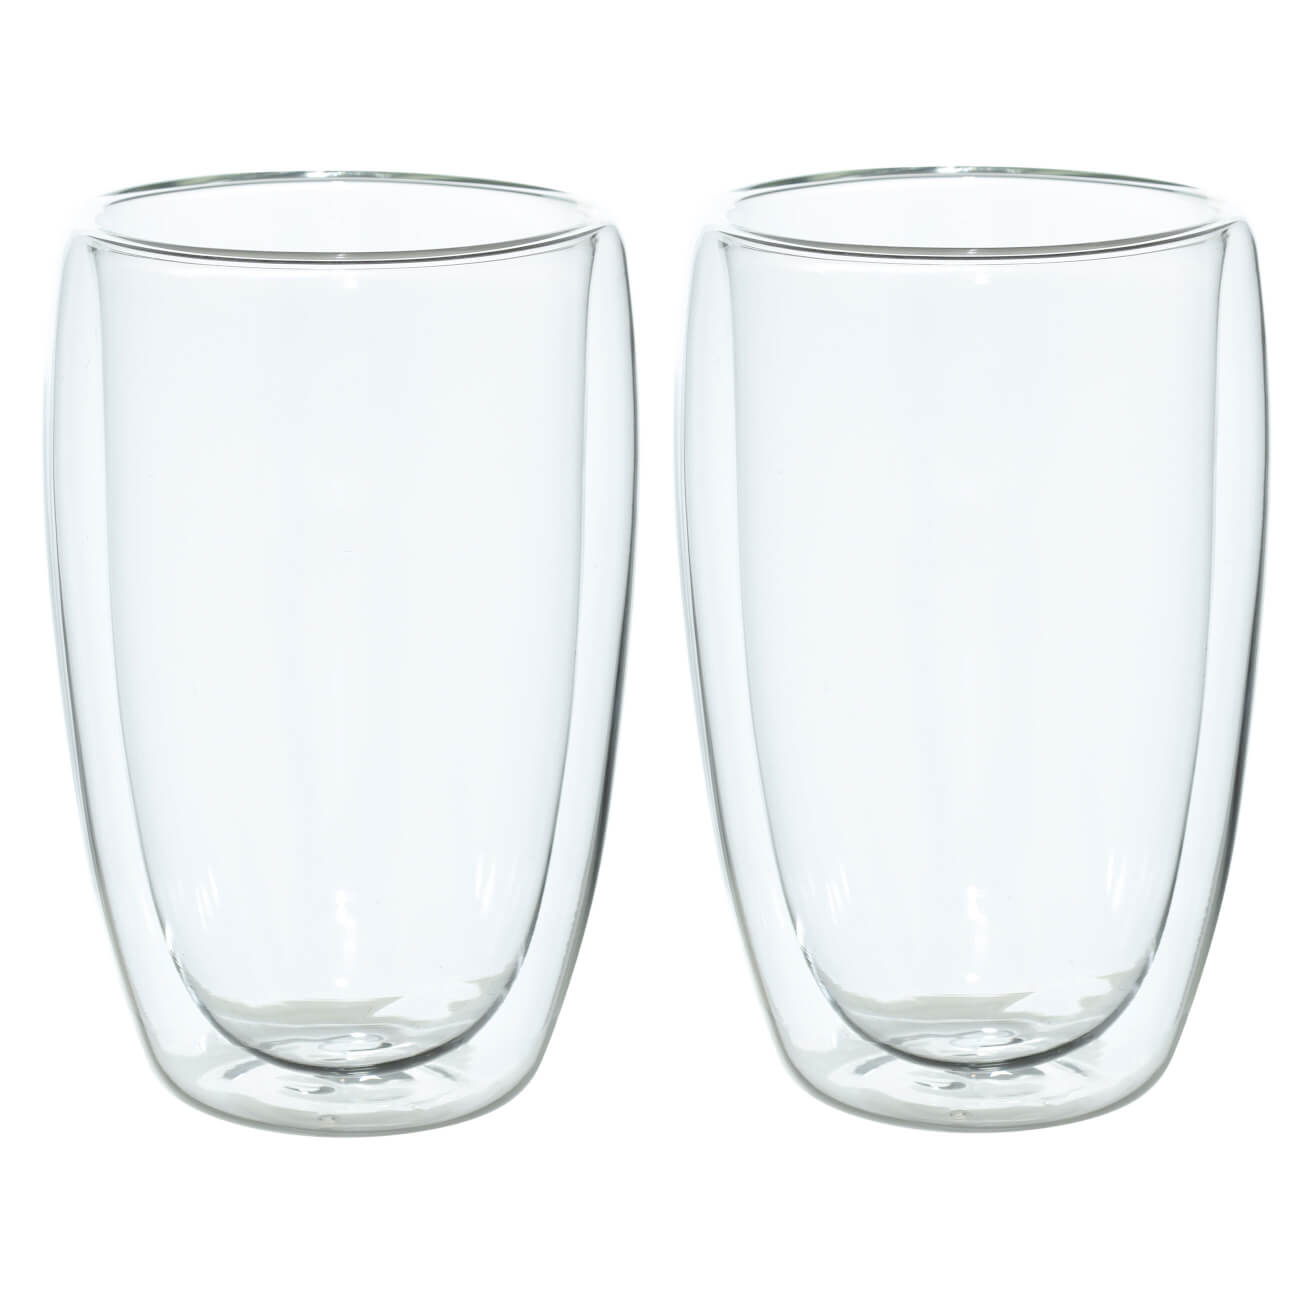 16490 fissman набор sencha из 2 х стаканов с двойными стенками 280мл жаропрочное стекло Стакан, 400 мл, 2 шт, стекло Б, Air